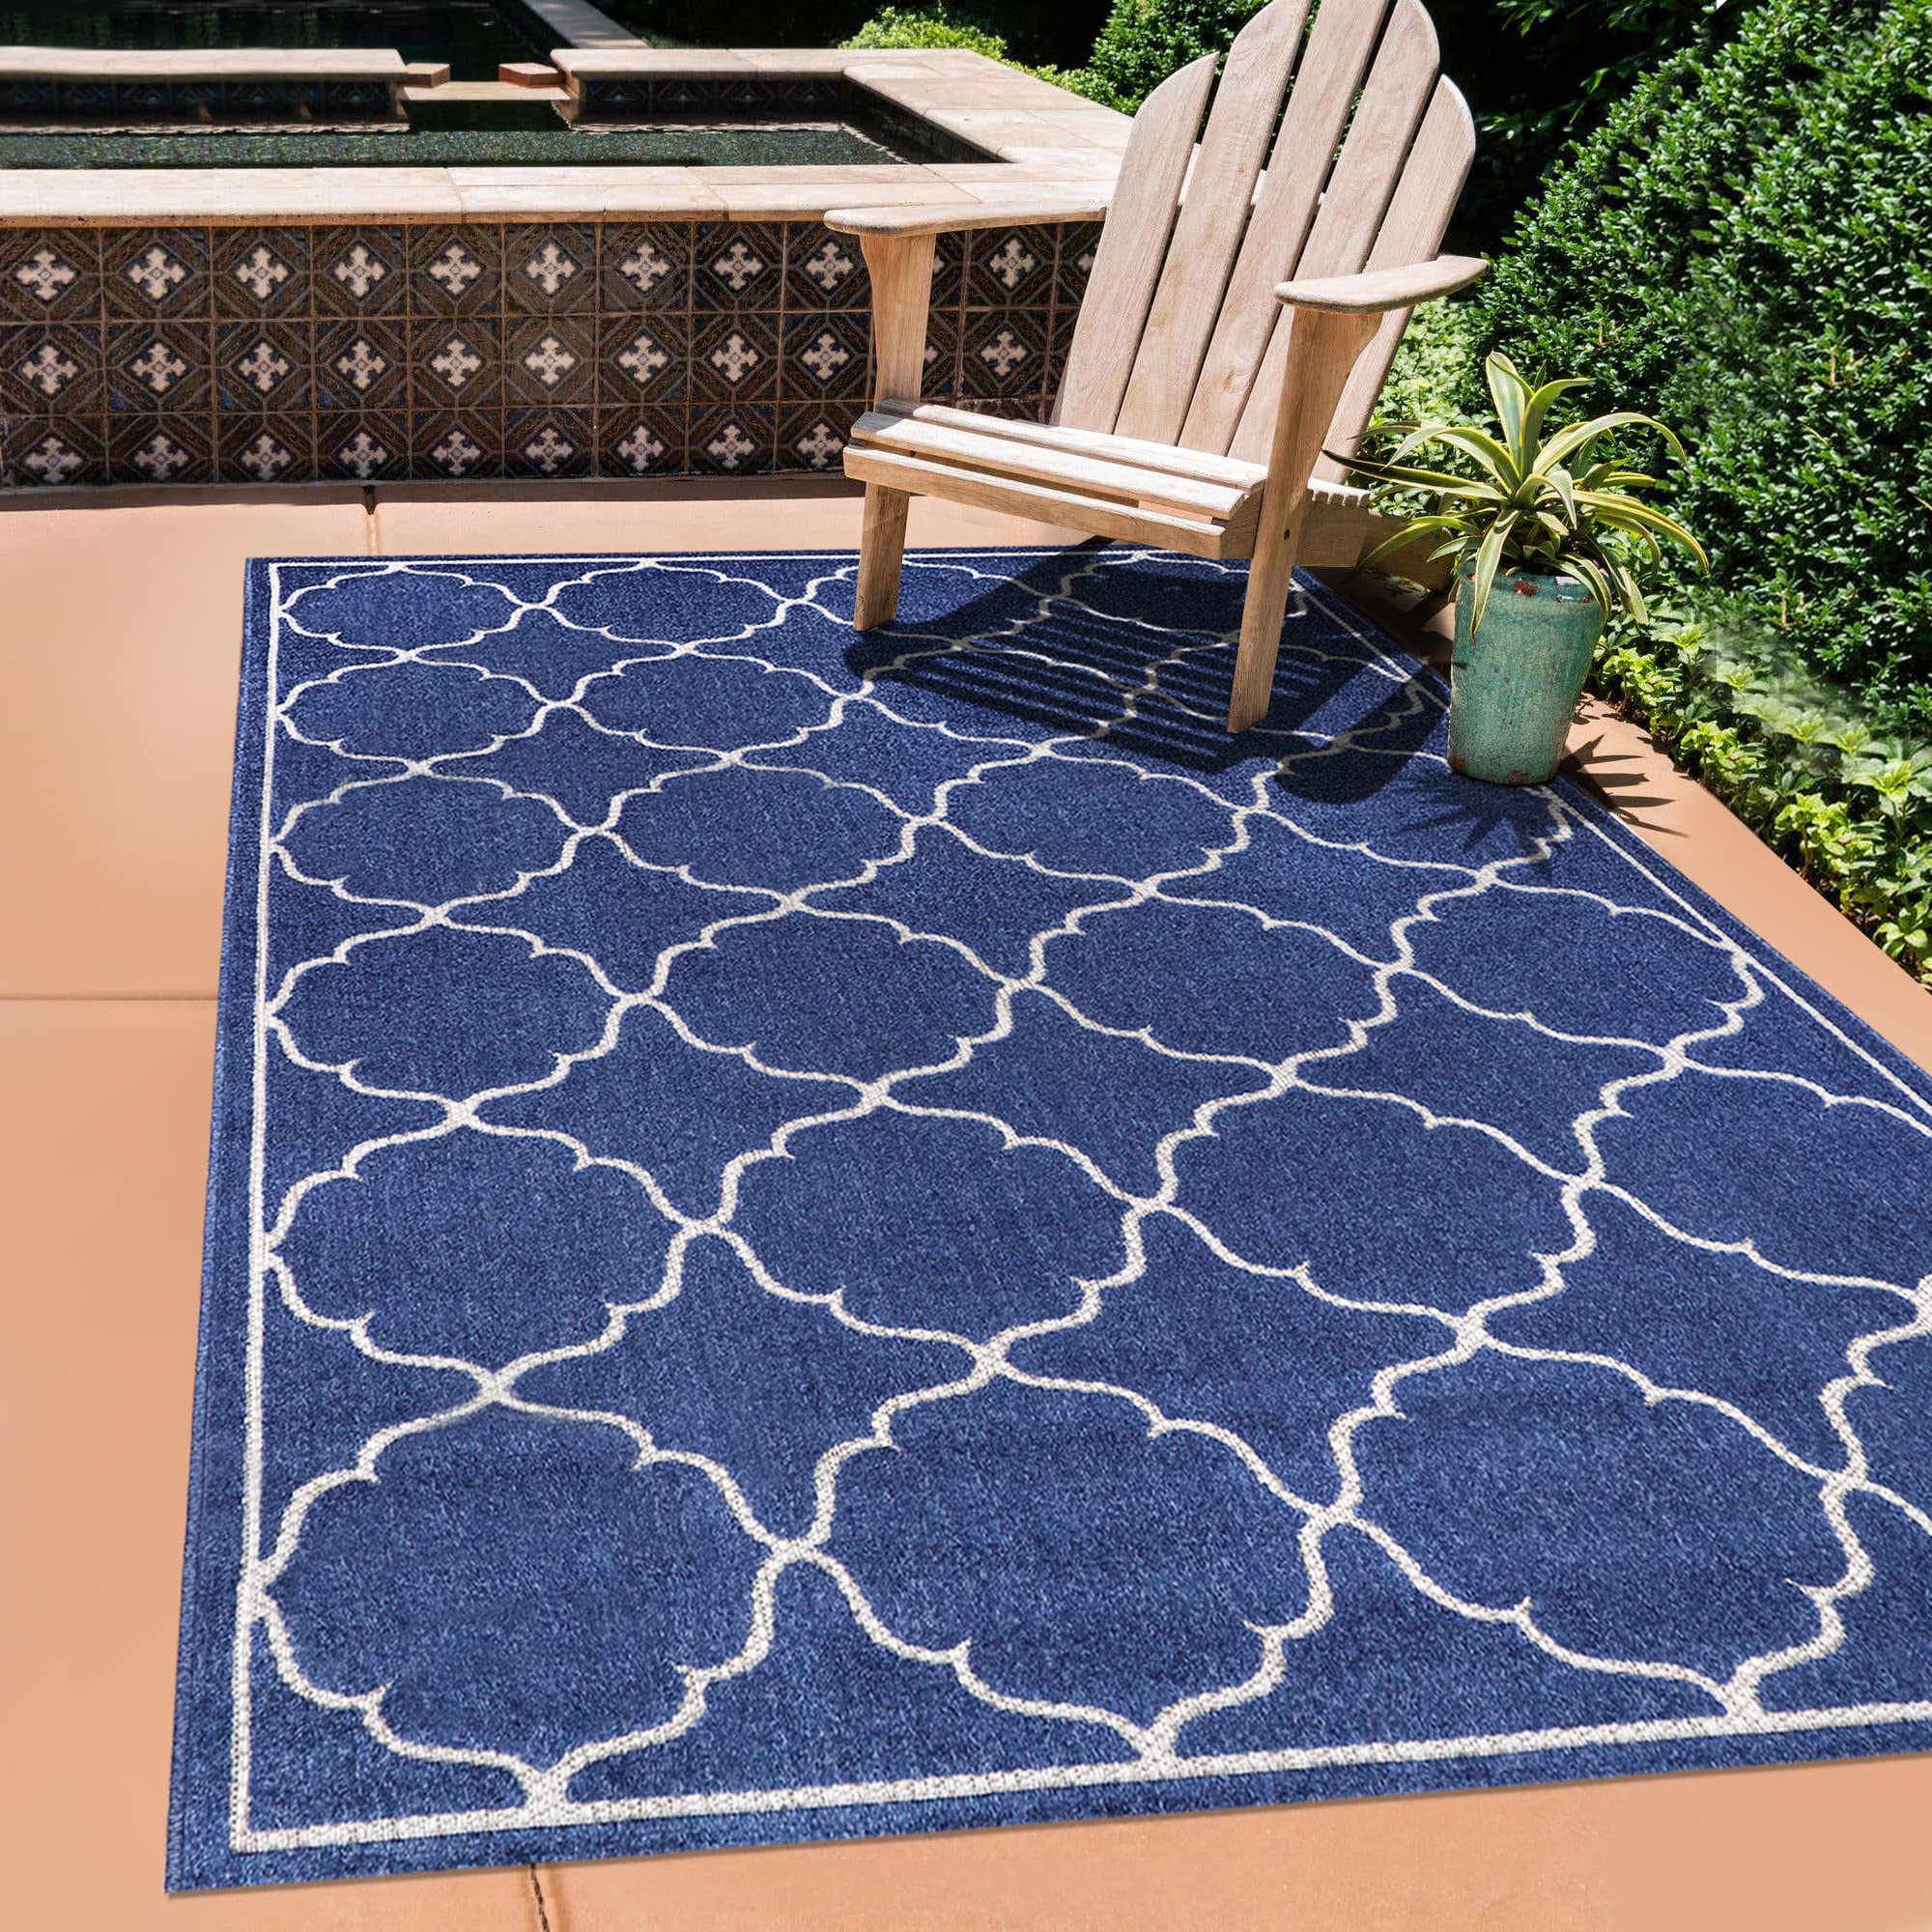 SANAT Outdoor Teppich Wetterfest - Teppich für den Innen- und Außenbereich - Balkon Teppich Wasserabweisend - Teppiche für Terrasse, Garten, Küche, Bad oder Wohnzimmer - Blau, 140 x 200 cm